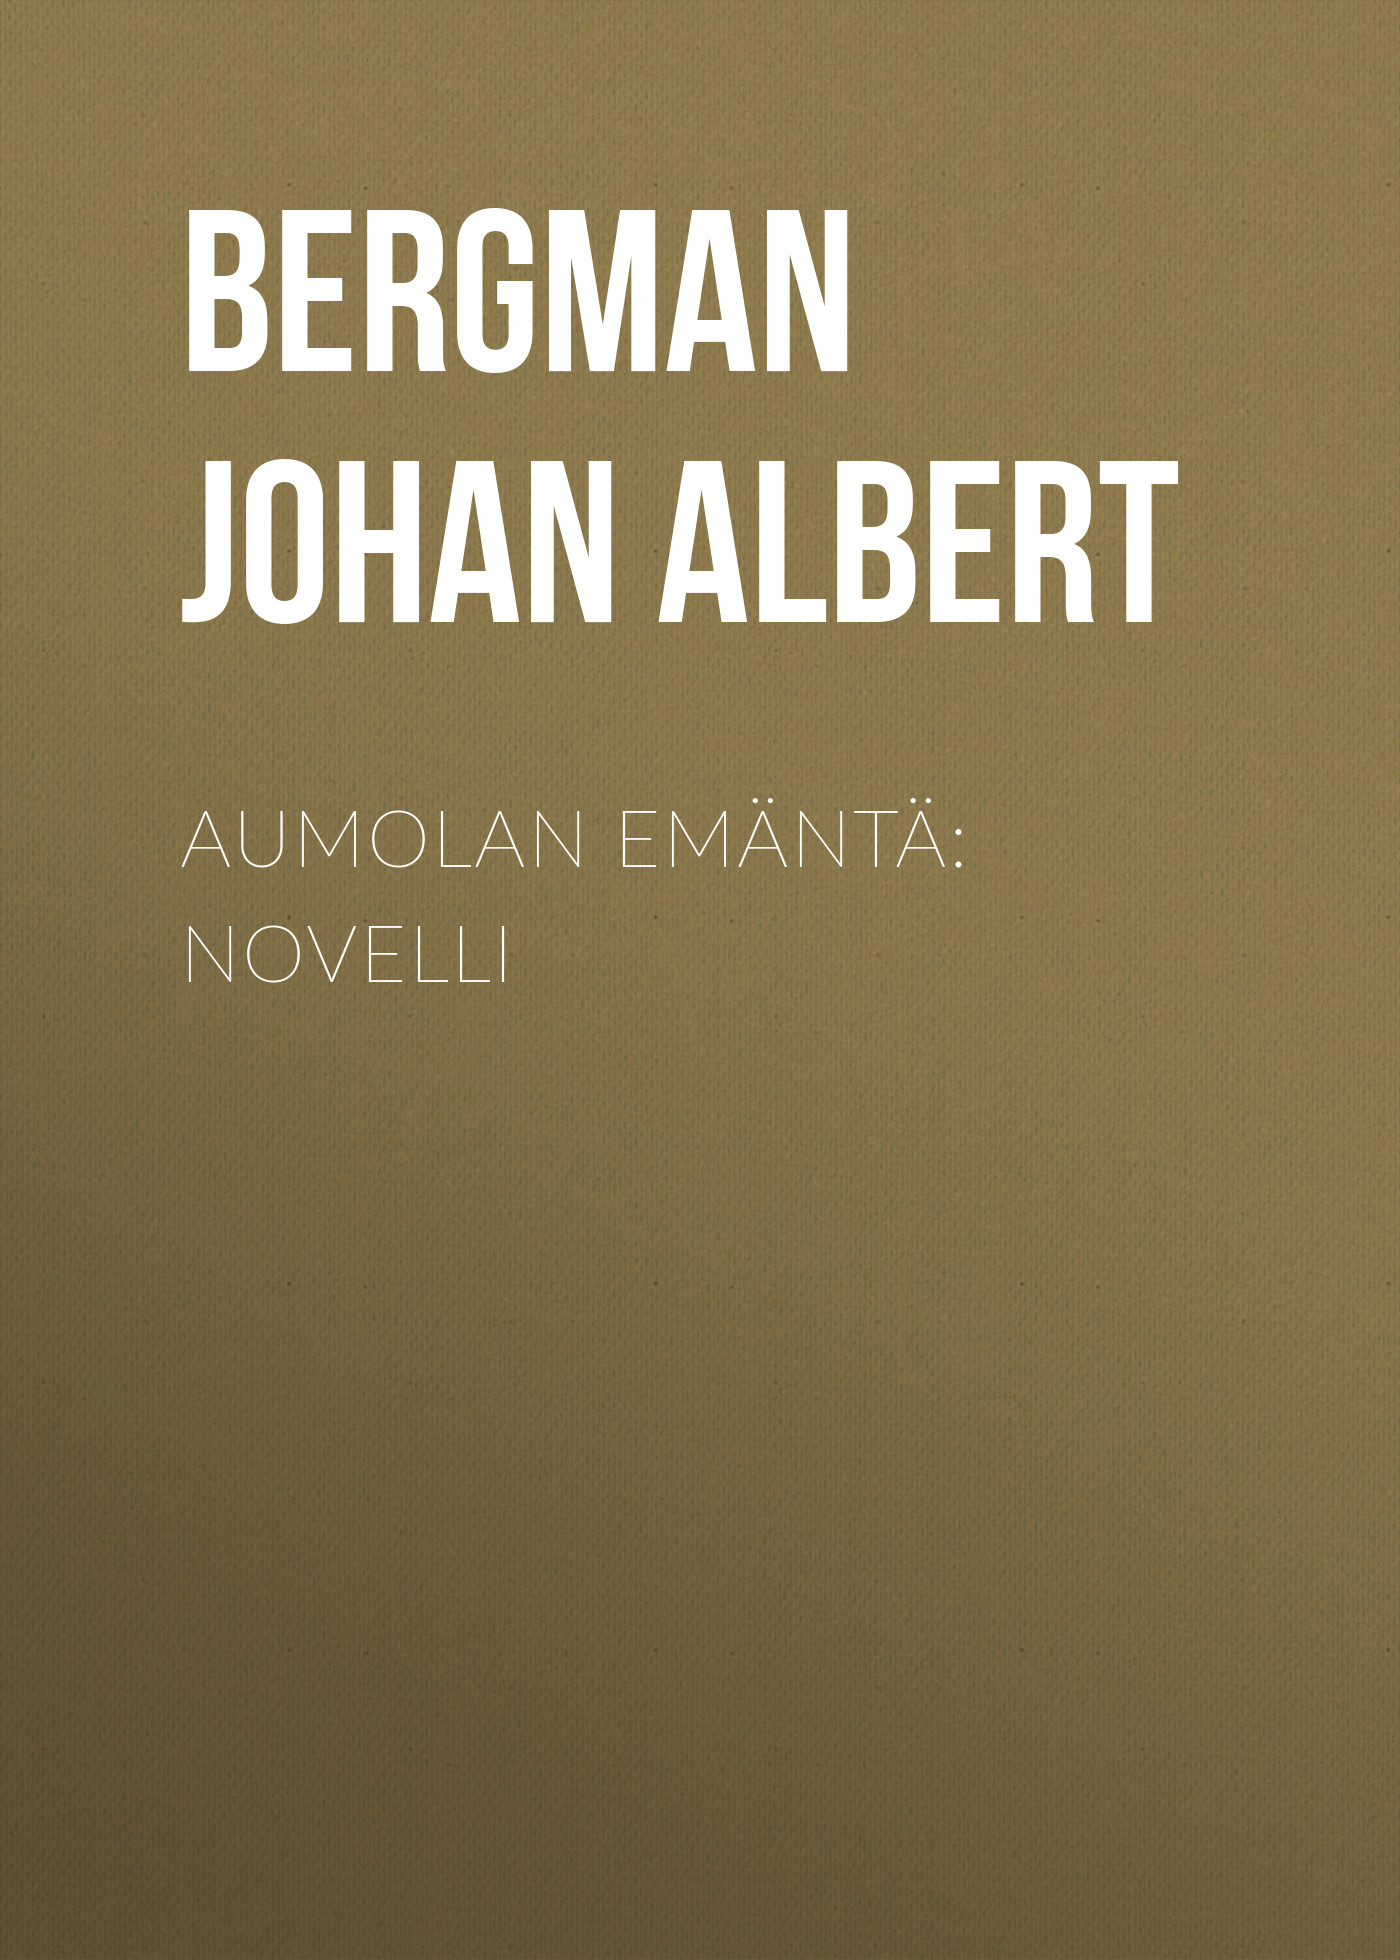 Книга Aumolan emäntä: Novelli из серии , созданная Johan Bergman, может относится к жанру Зарубежная классика, Зарубежная старинная литература. Стоимость электронной книги Aumolan emäntä: Novelli с идентификатором 24178108 составляет 0.90 руб.